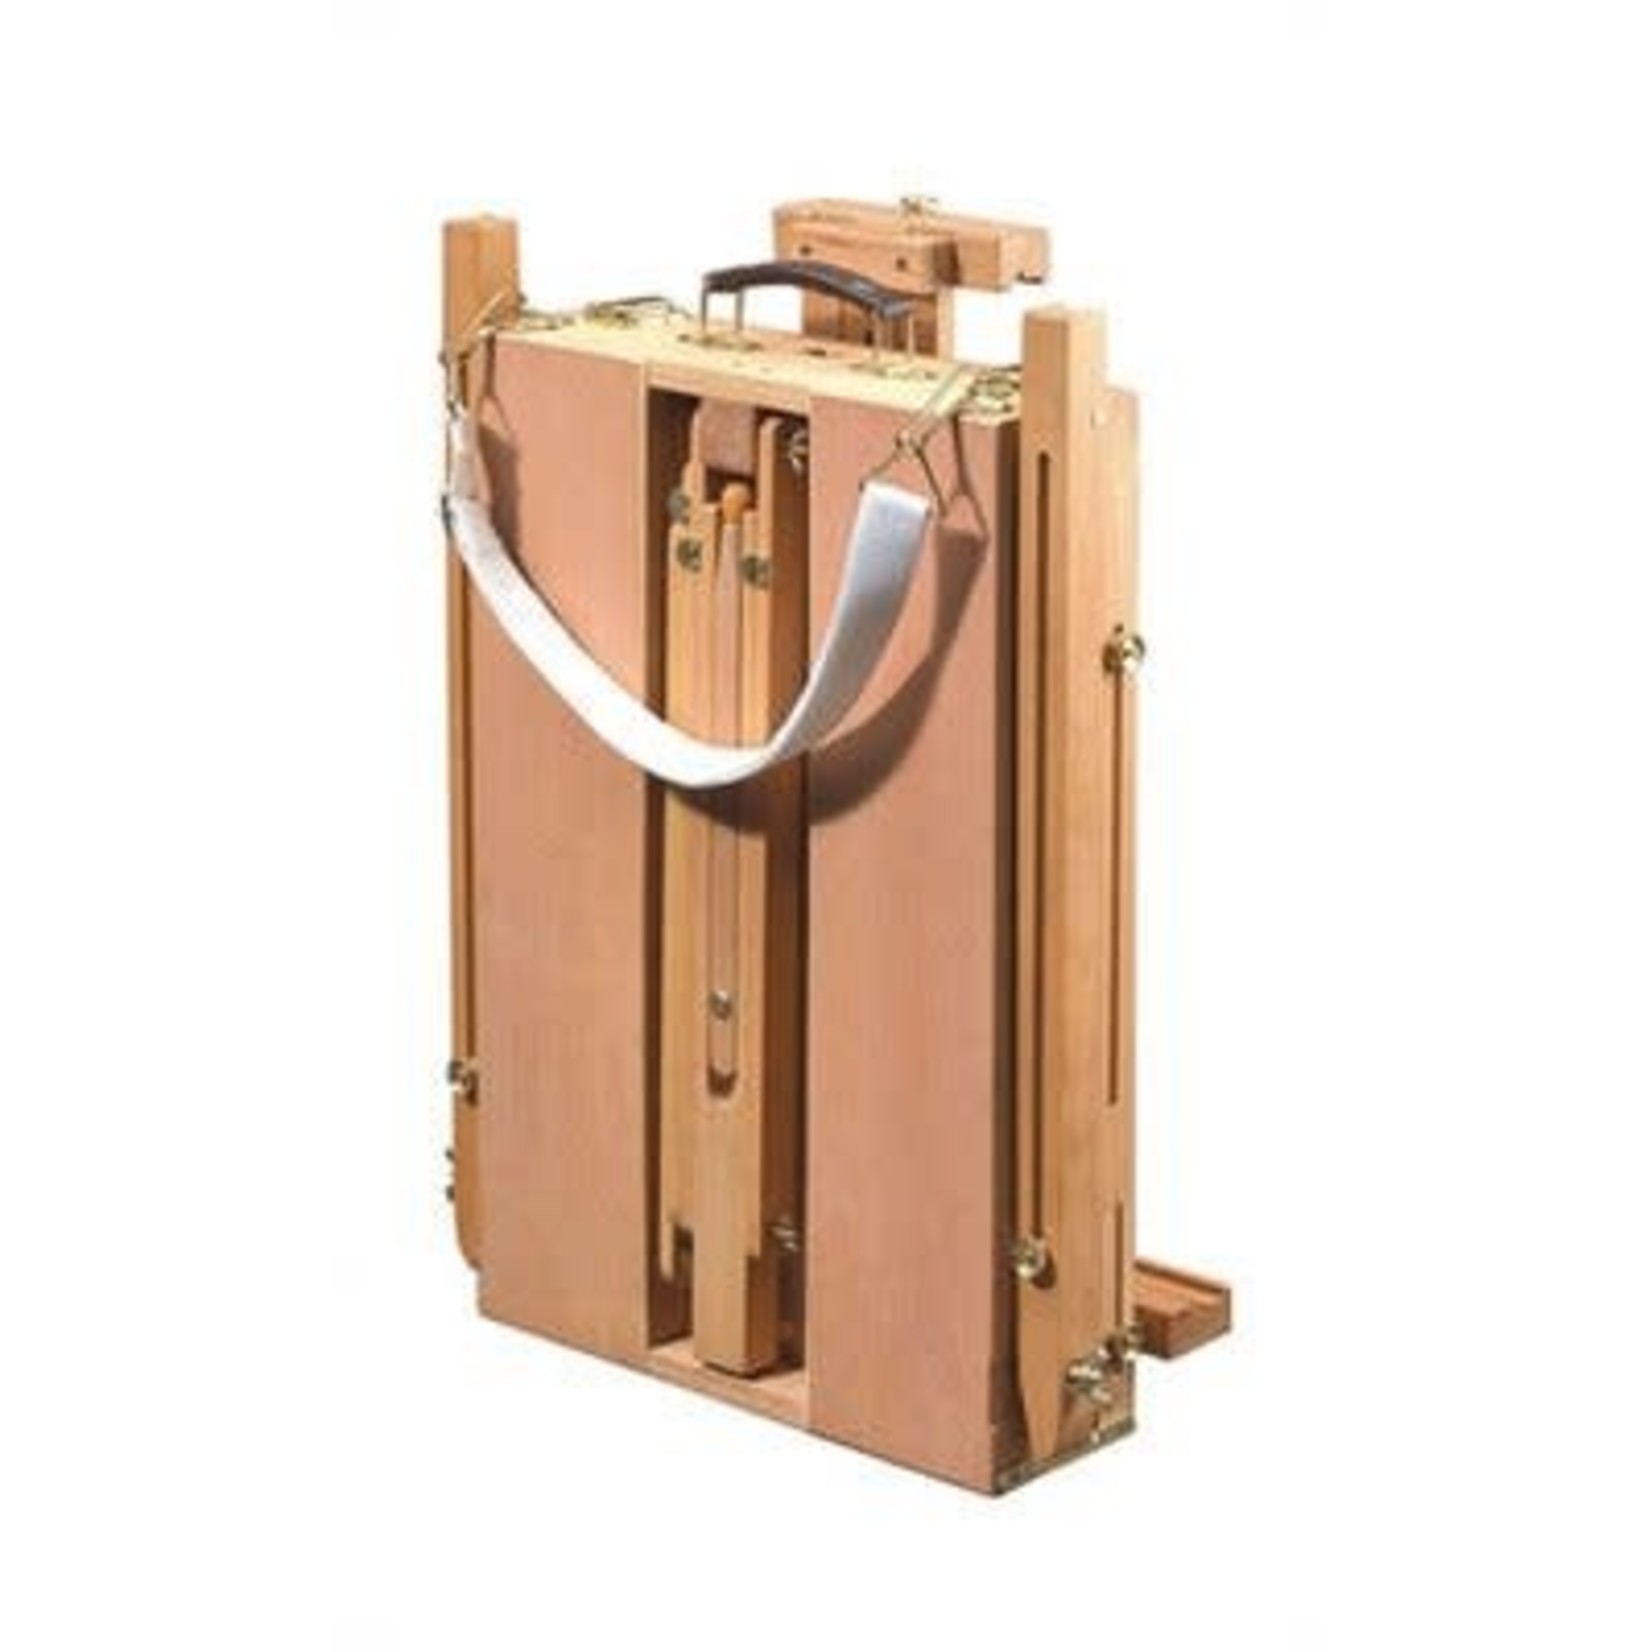 US Art Supply Coronado Wooden Box Easel- Large